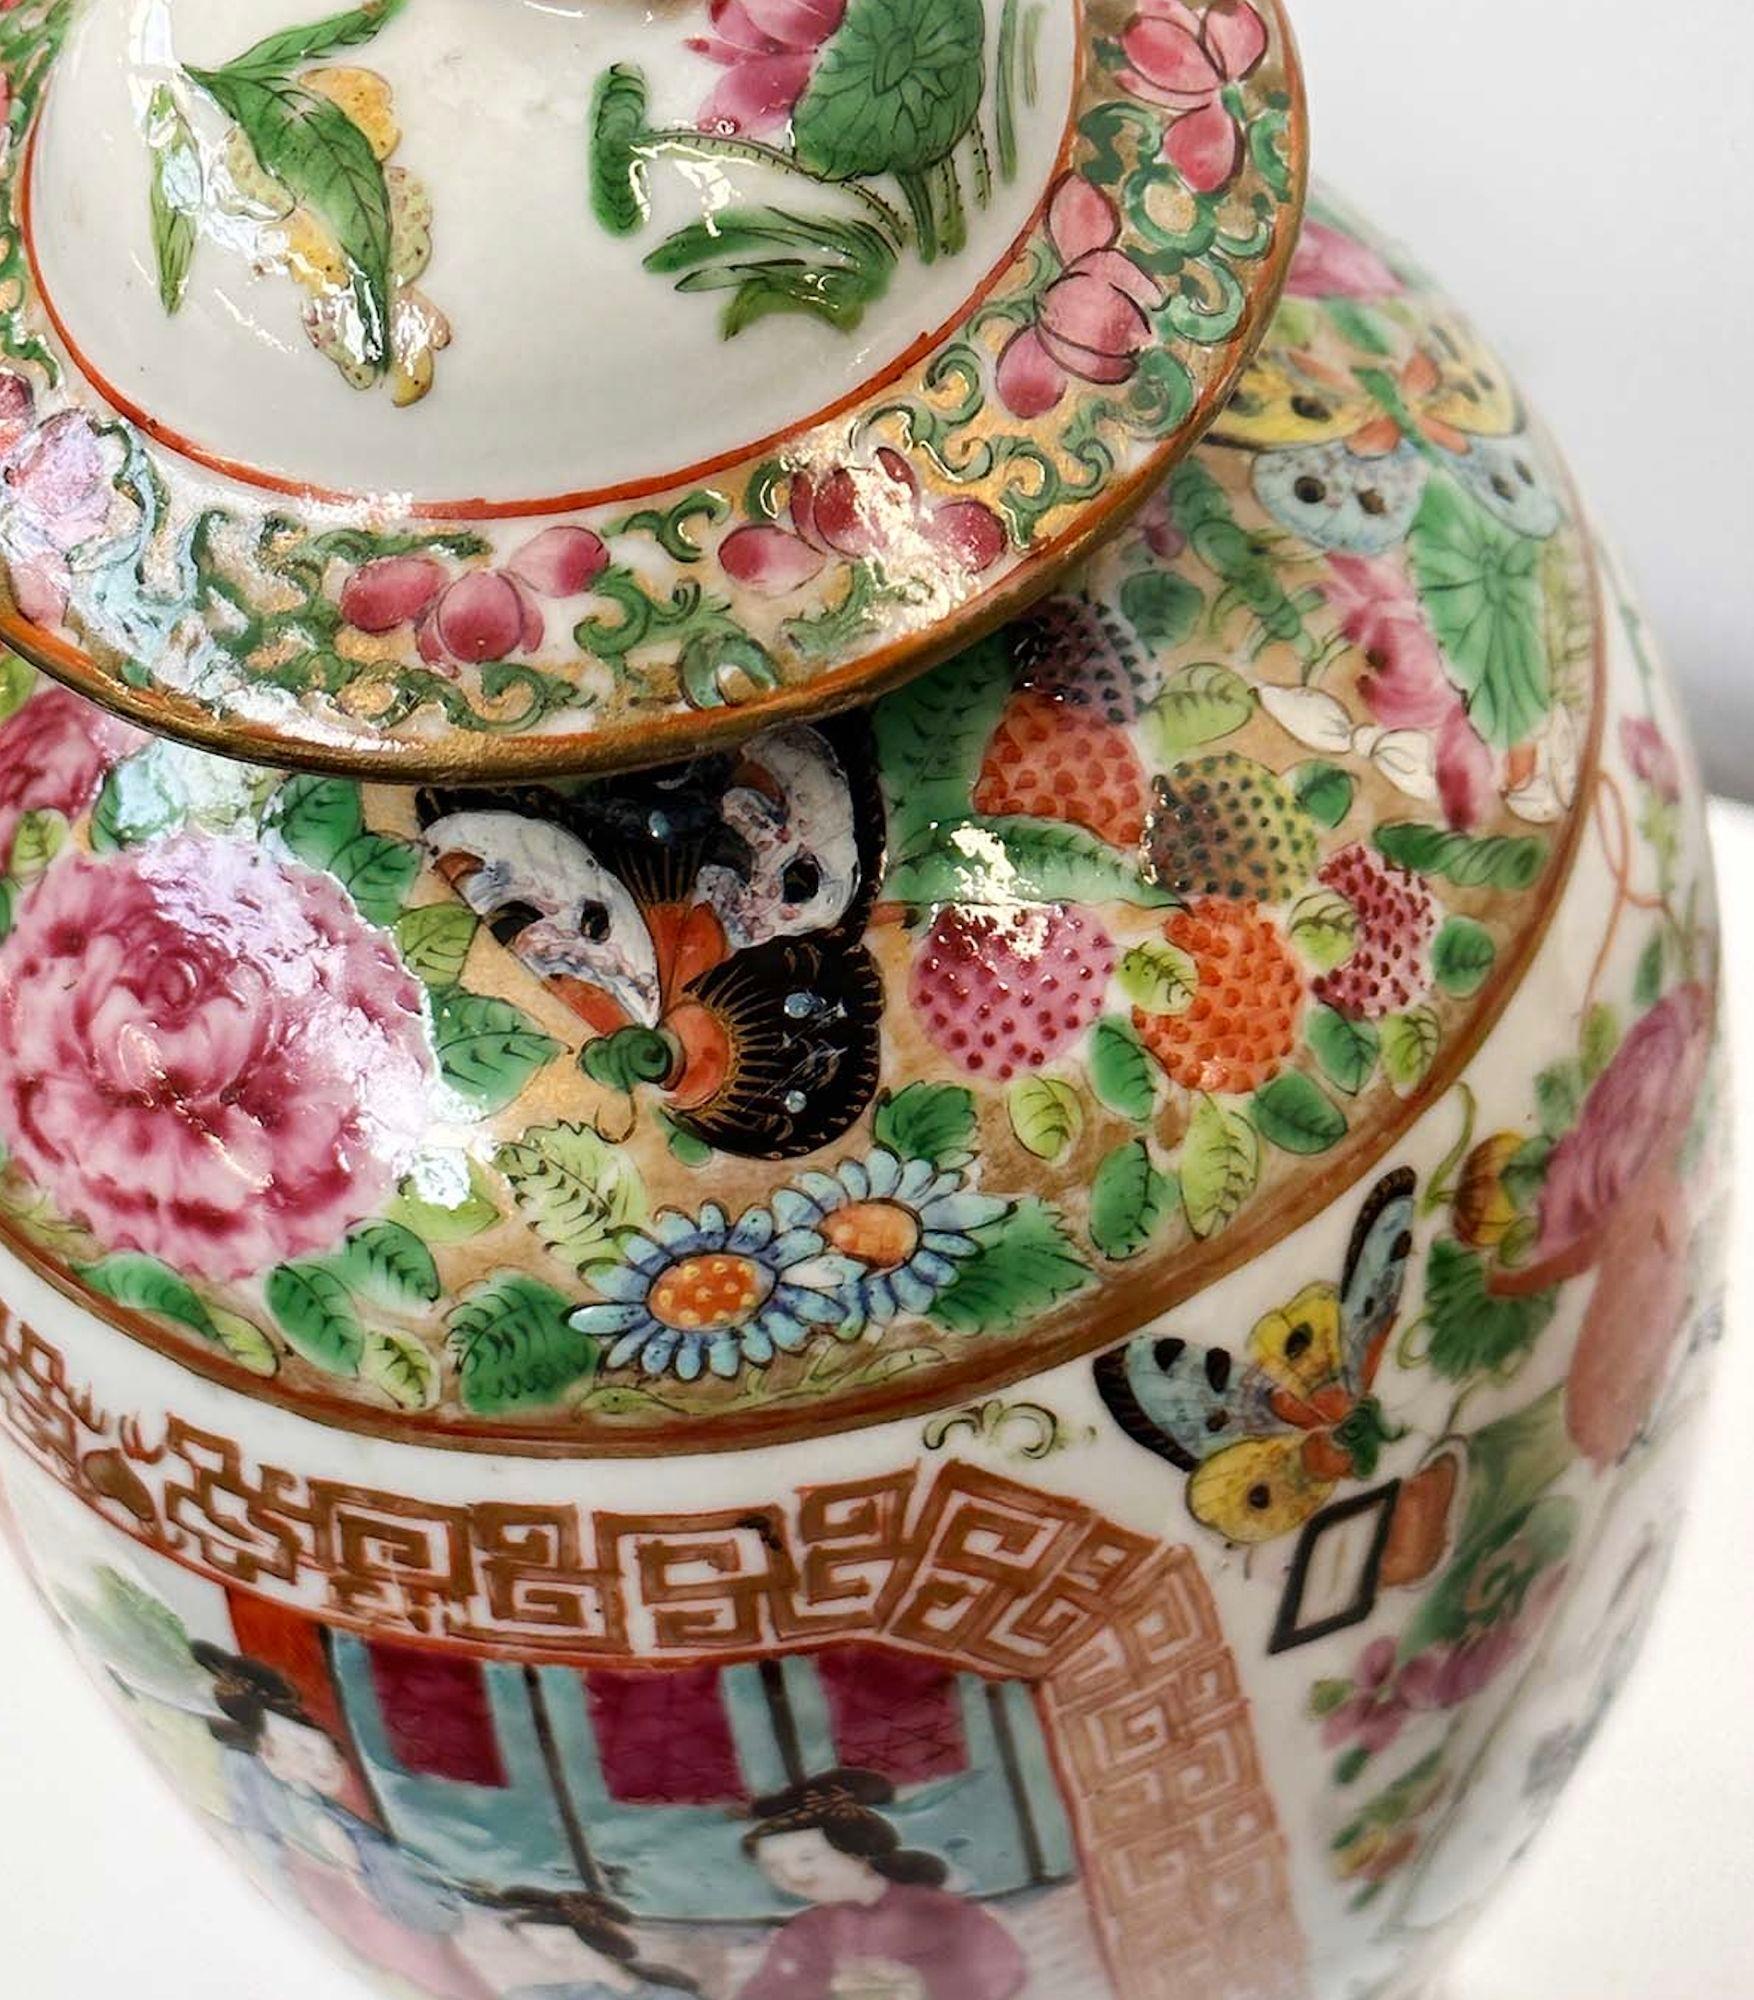 Paire de vases de Canton de la famille rose traditionnelle chinoise avec de superbes détails peints à la main tels que des représentations de la vie quotidienne, des scènes chinoises traditionnelles, des figures botaniques et des papillons. Chaque